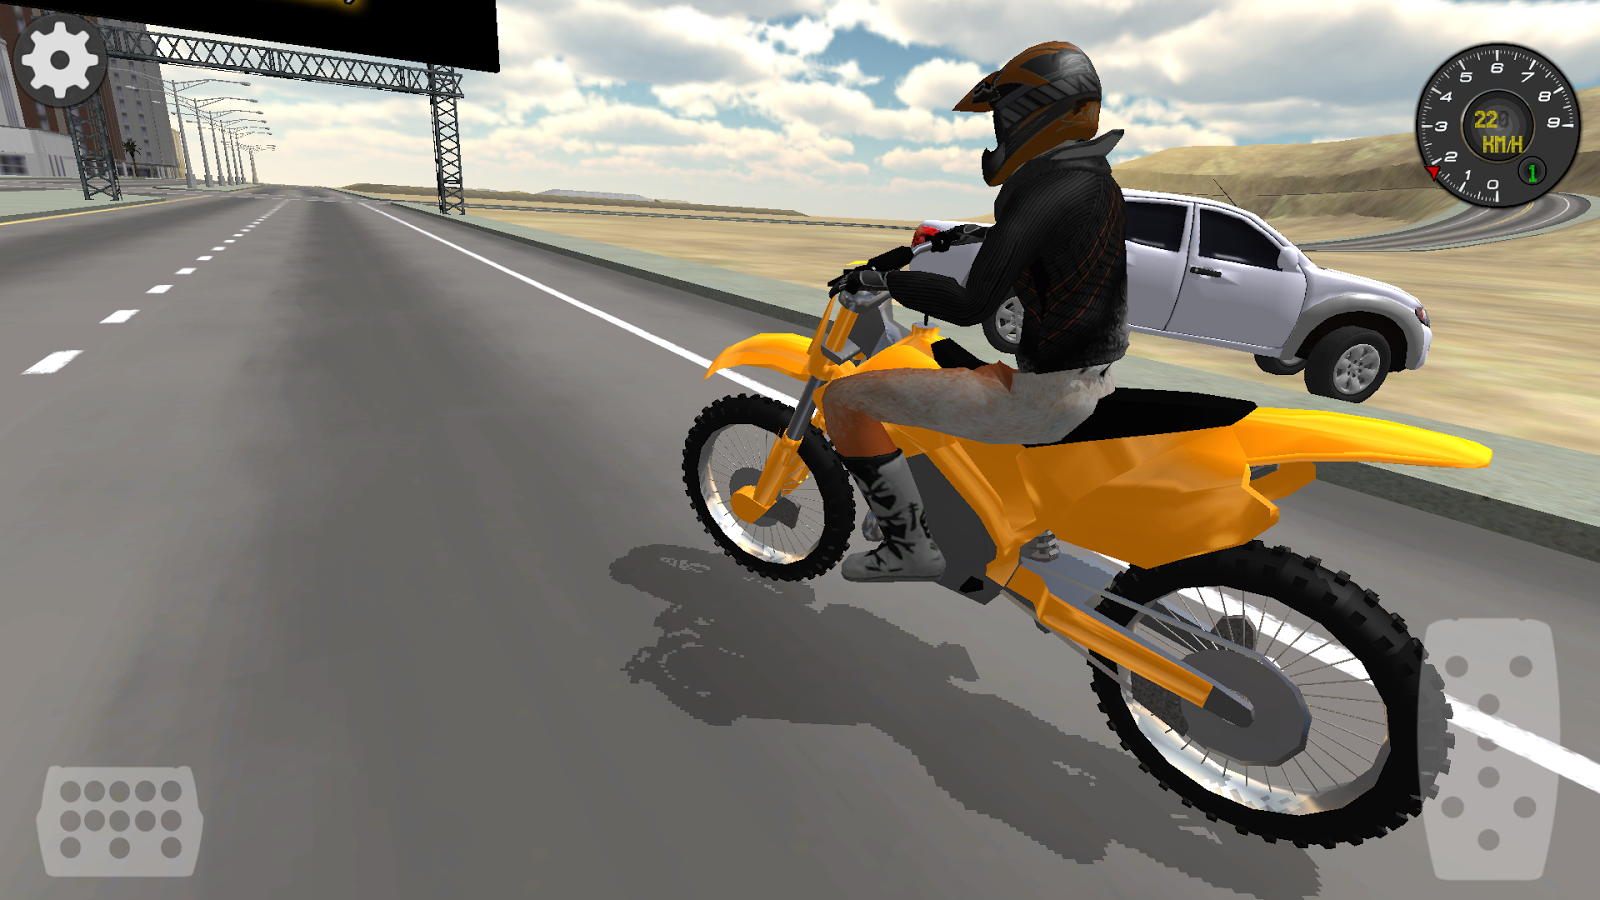 Motor Bike Crush Simulator 3D Apl Android Di Google Play